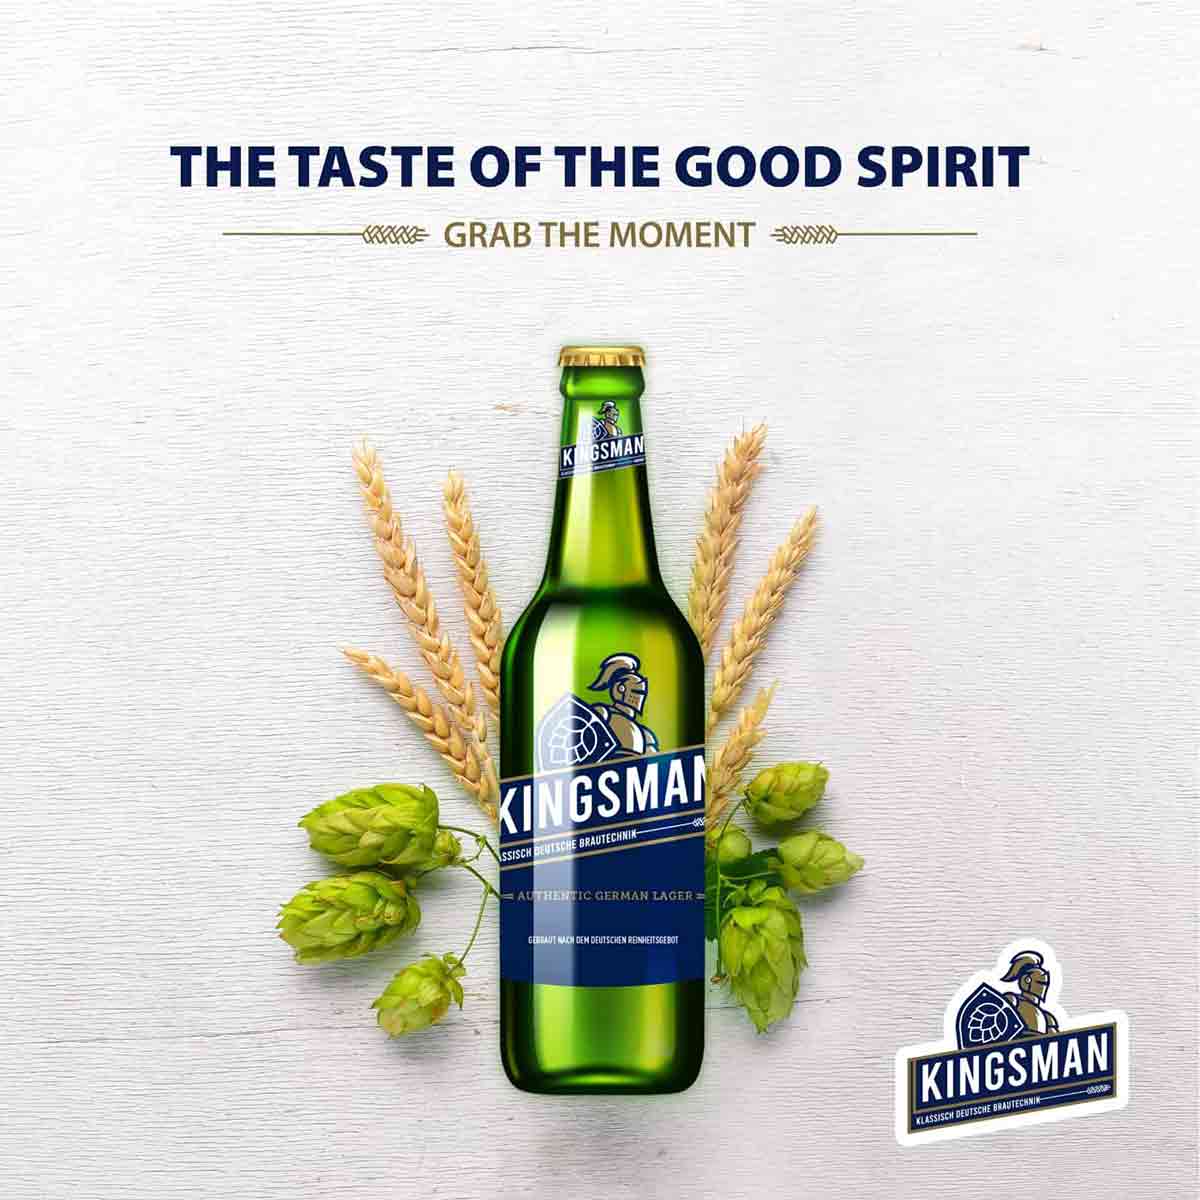 Kingsman Beer Taste of Good Spirit